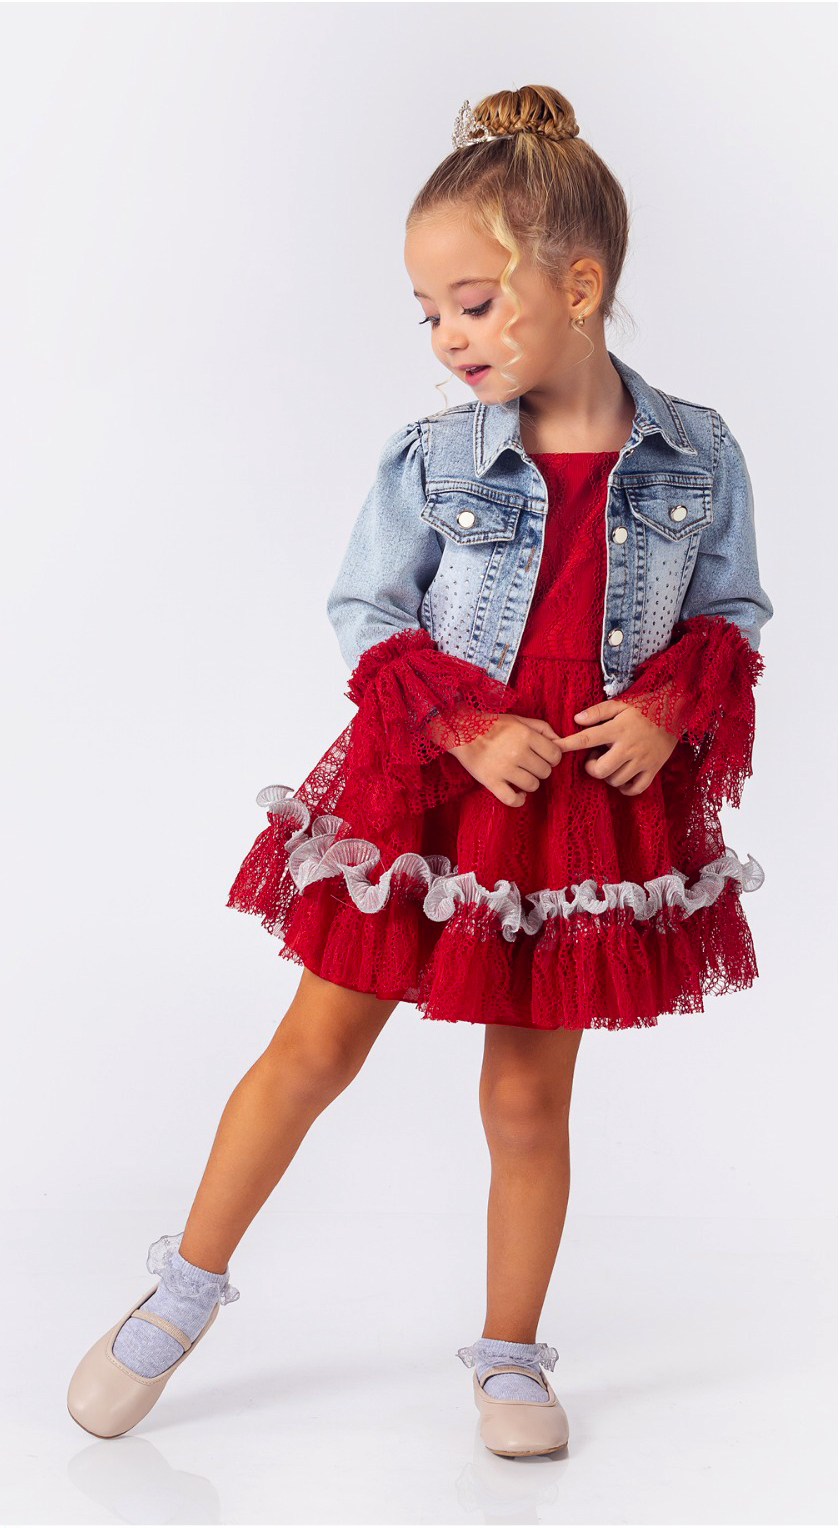 Flicker Creed a billion Rochiță roșie cu geacă de blugi ( 3-6 ani). Rochițe fete elegante Set  fetite.